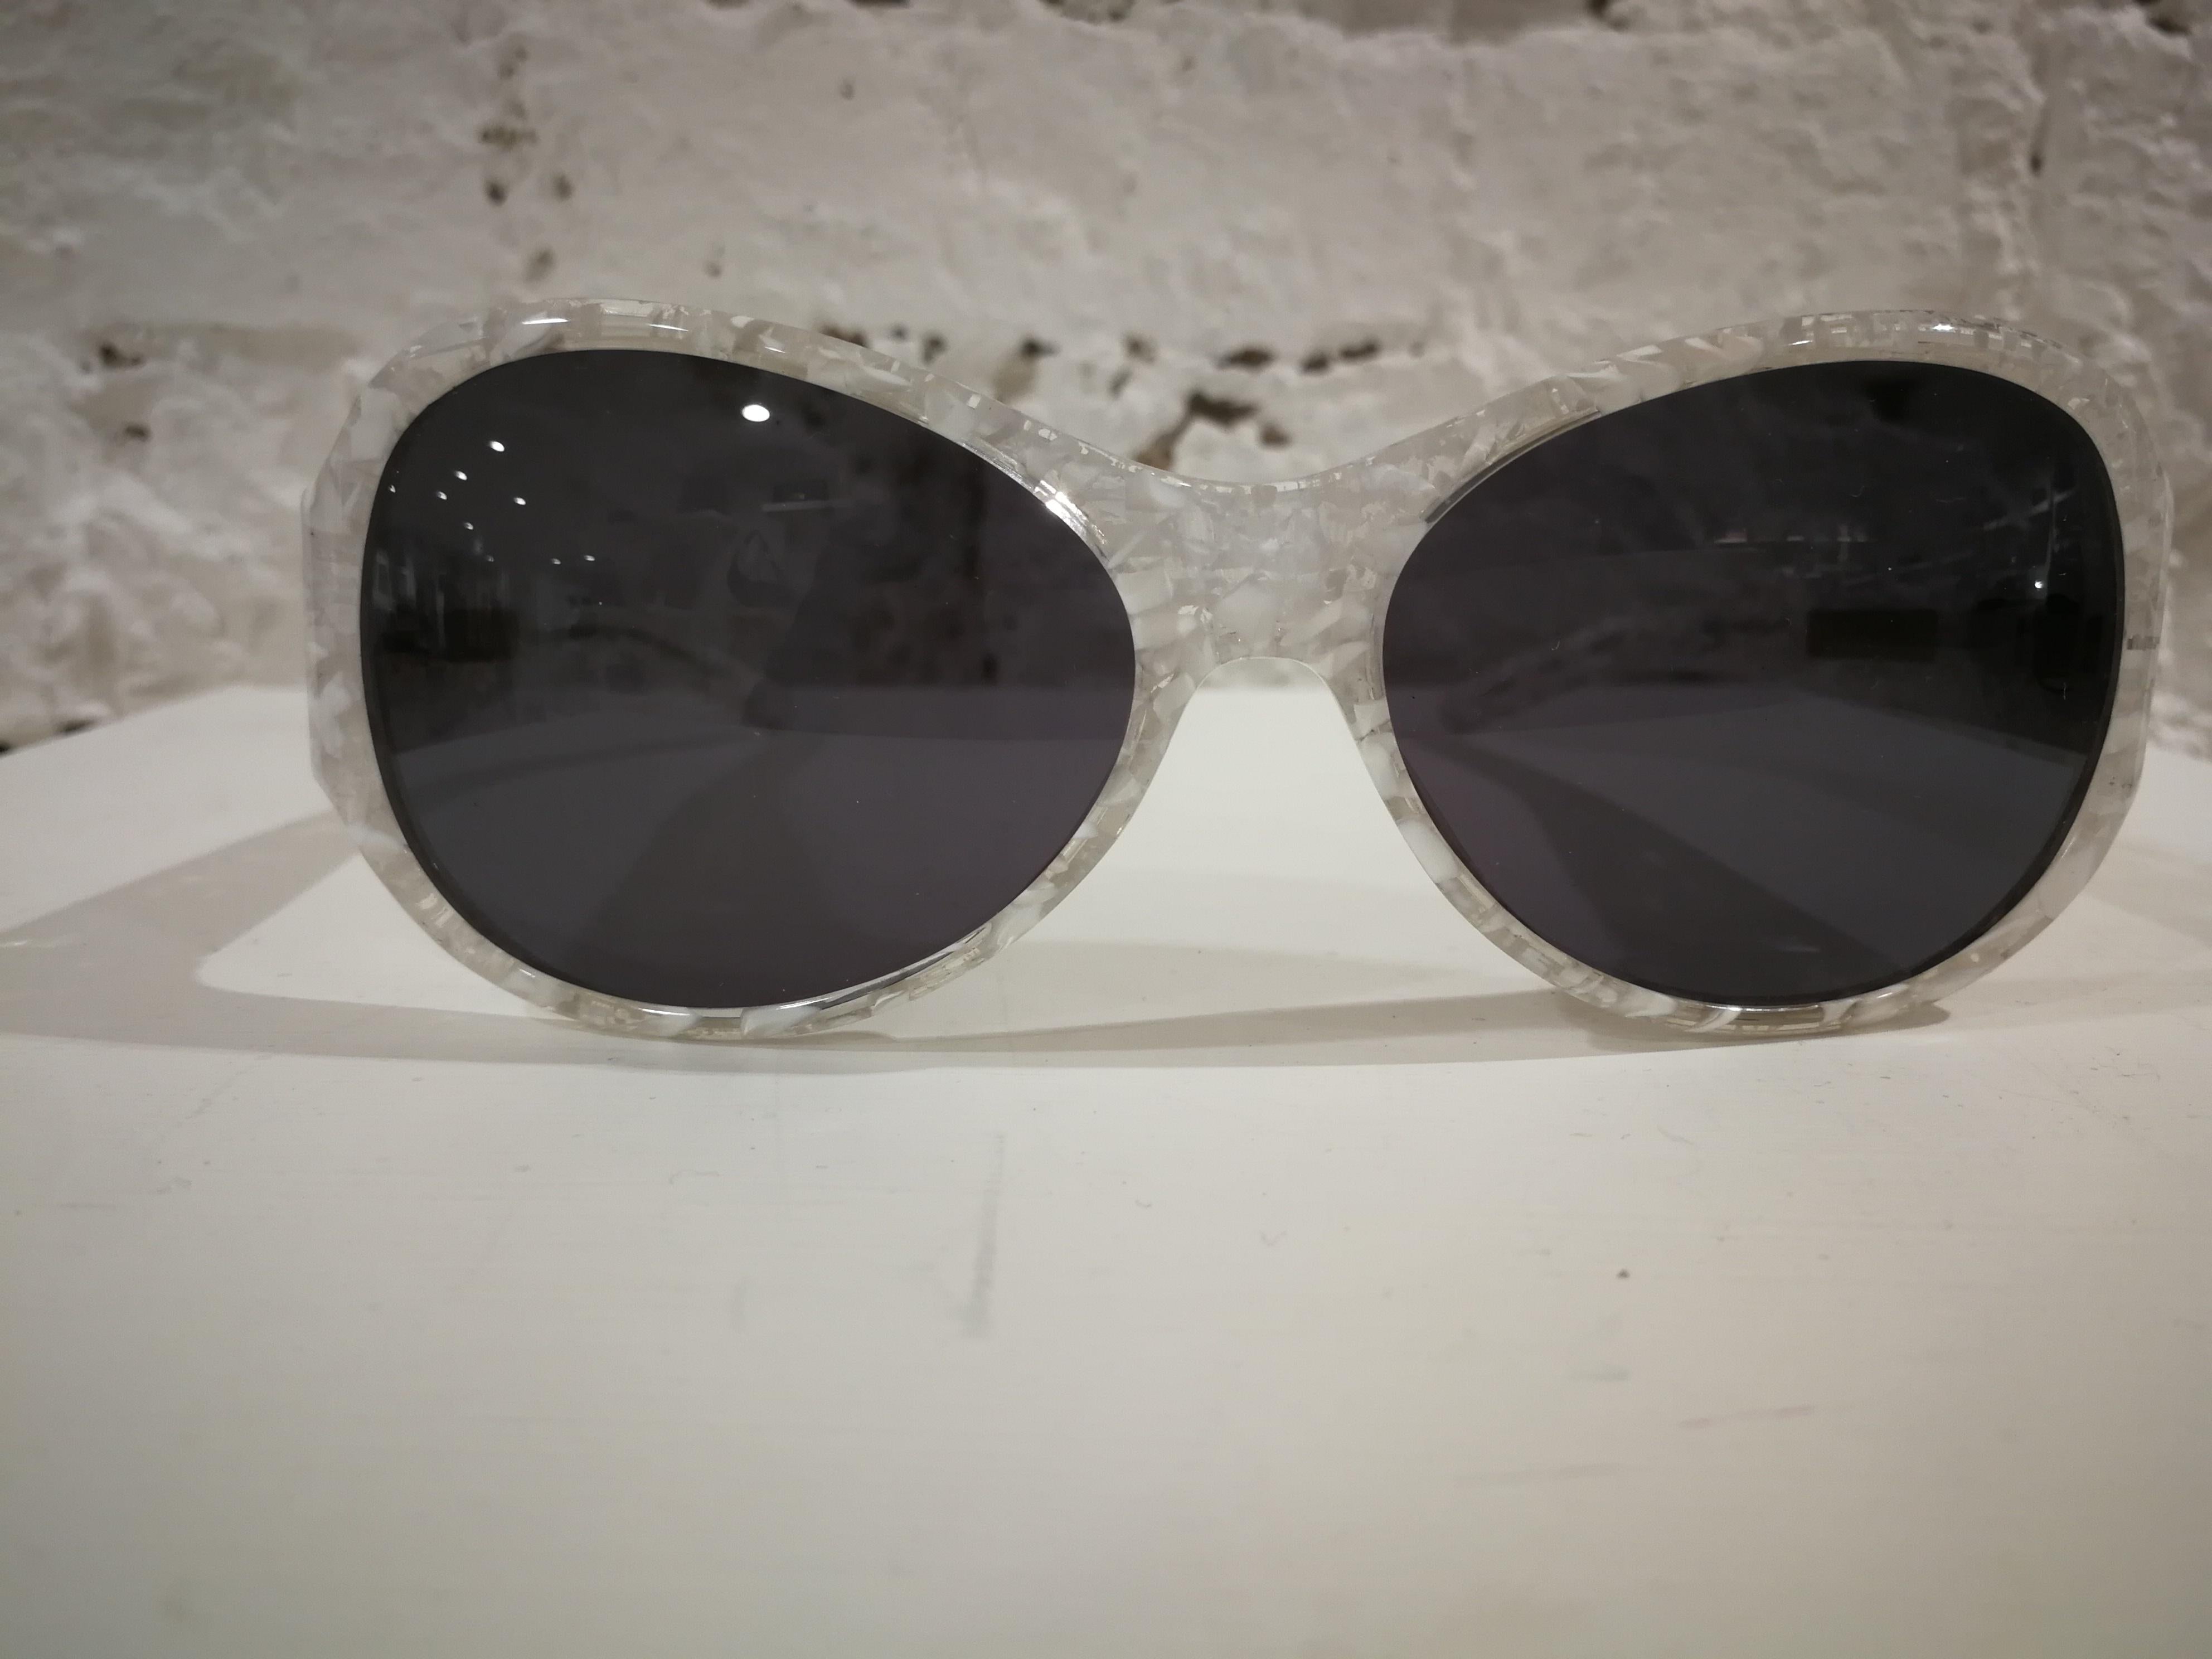 J. C de Castelbajac Sunglasses

